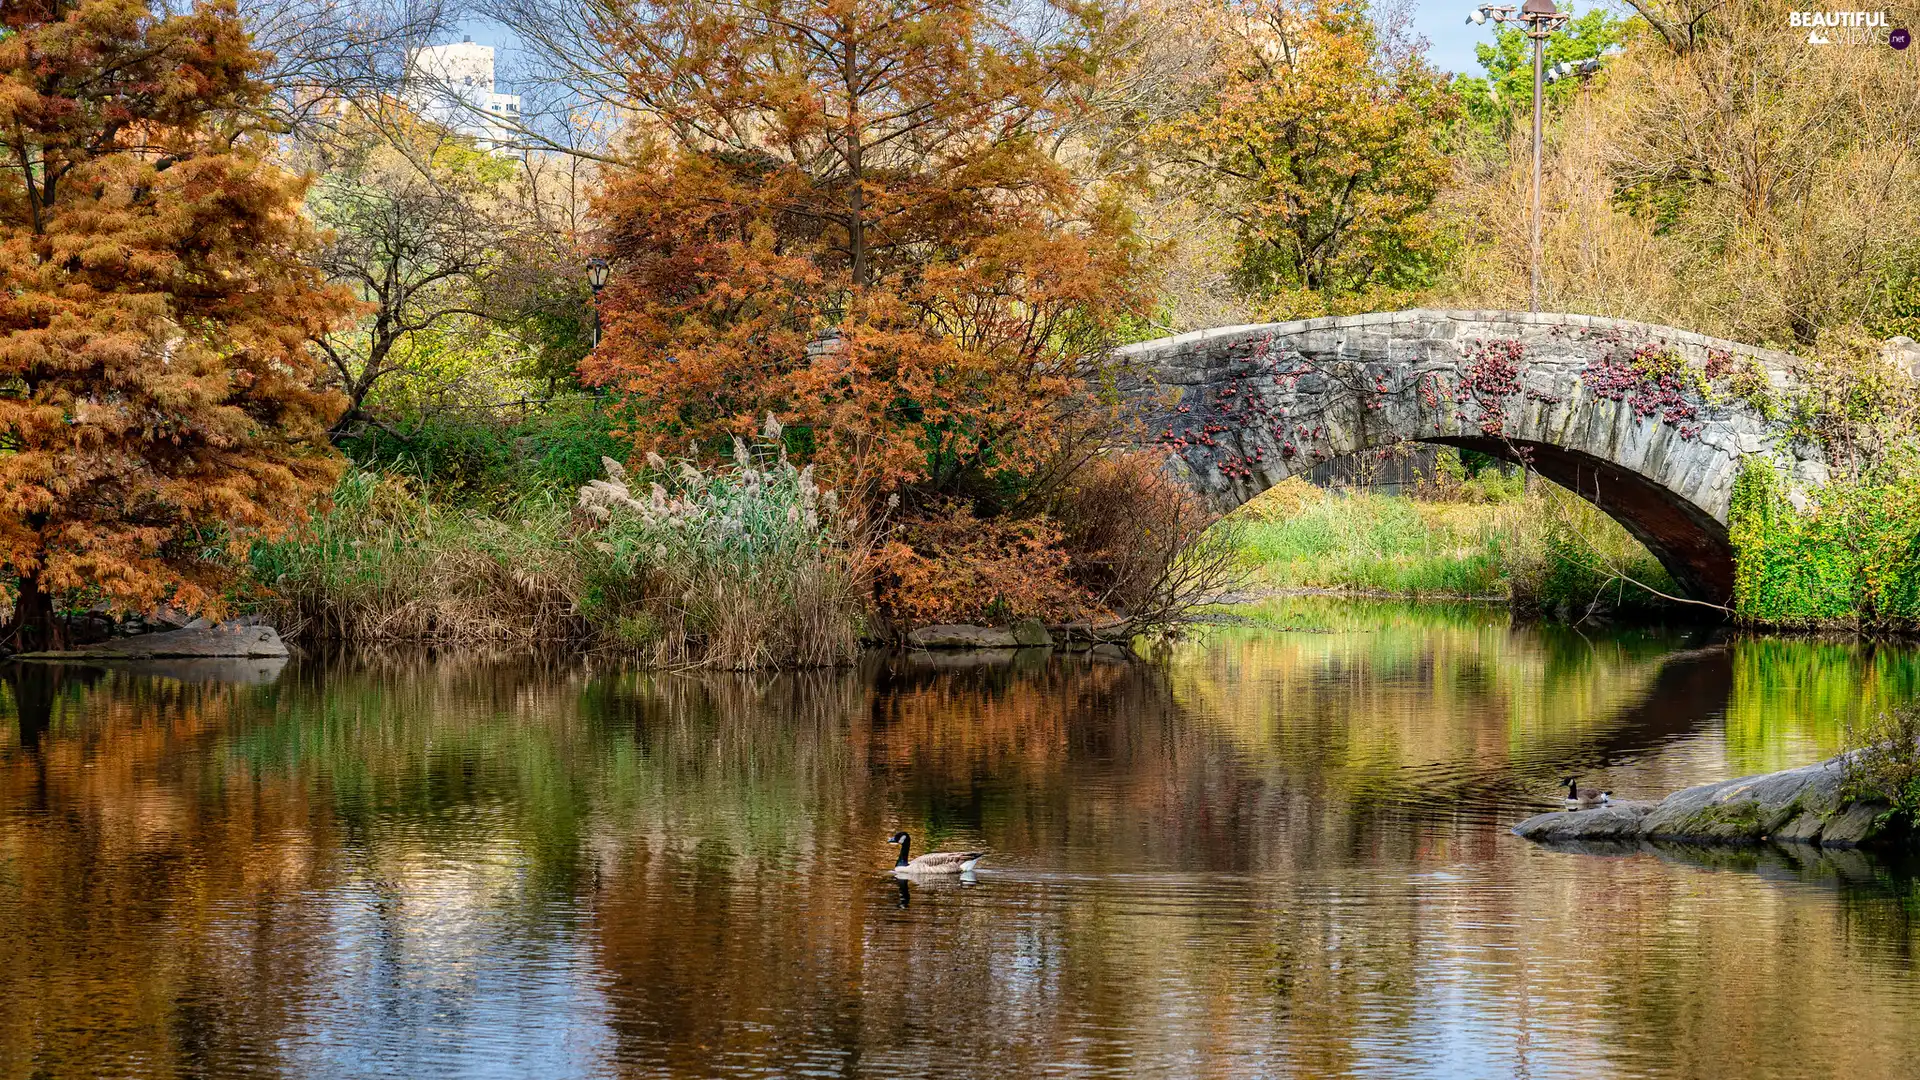 trees, Pond - car, Plants, bridge, autumn, viewes, duck